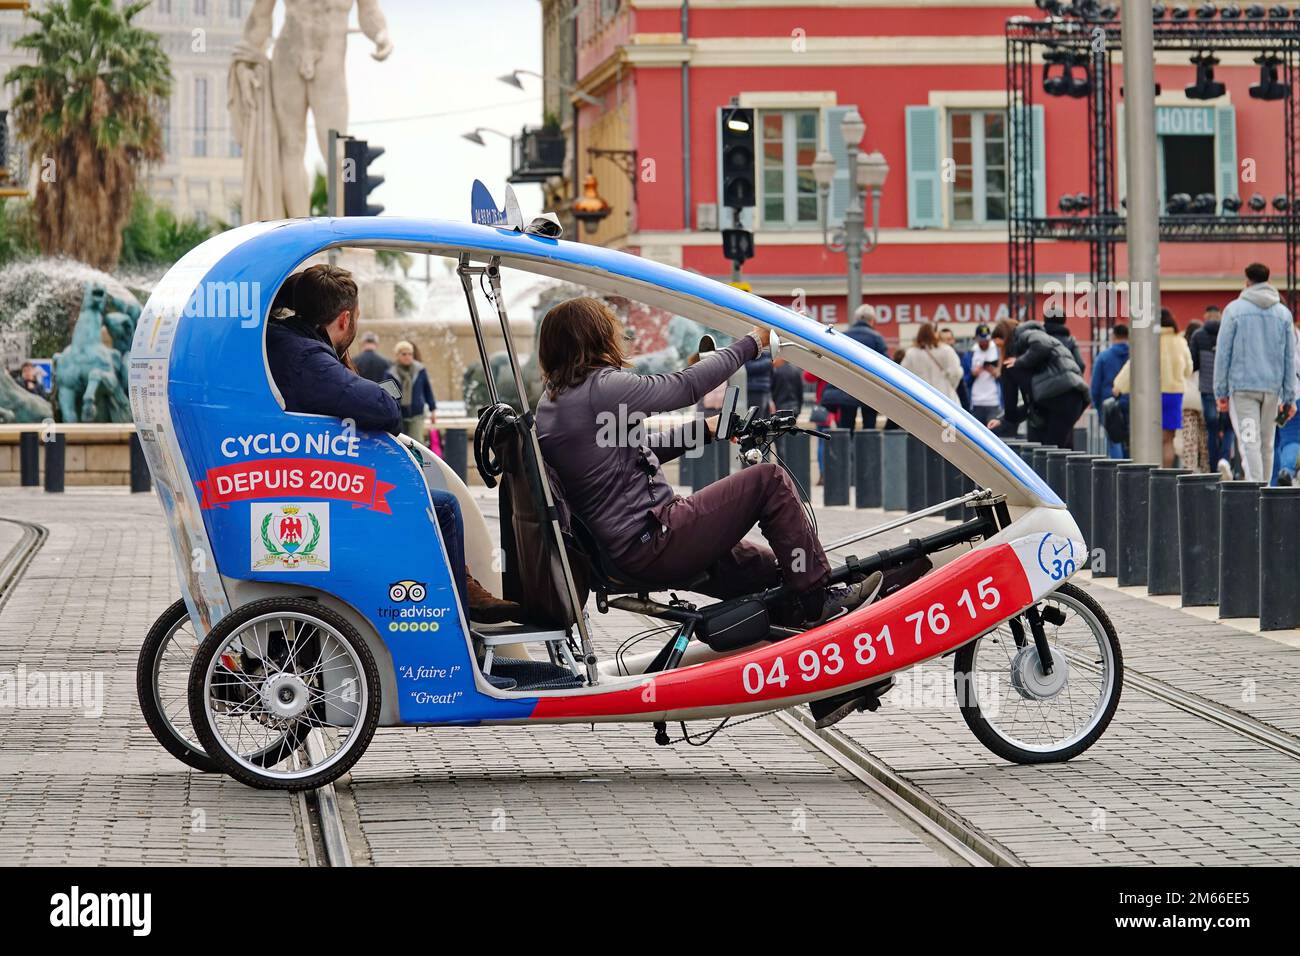 Elektrisches Dreirad für Sightseeing oder einfache Transfers im Stadtzentrum. Nizza, Frankreich - 2022. Dezember Stockfoto